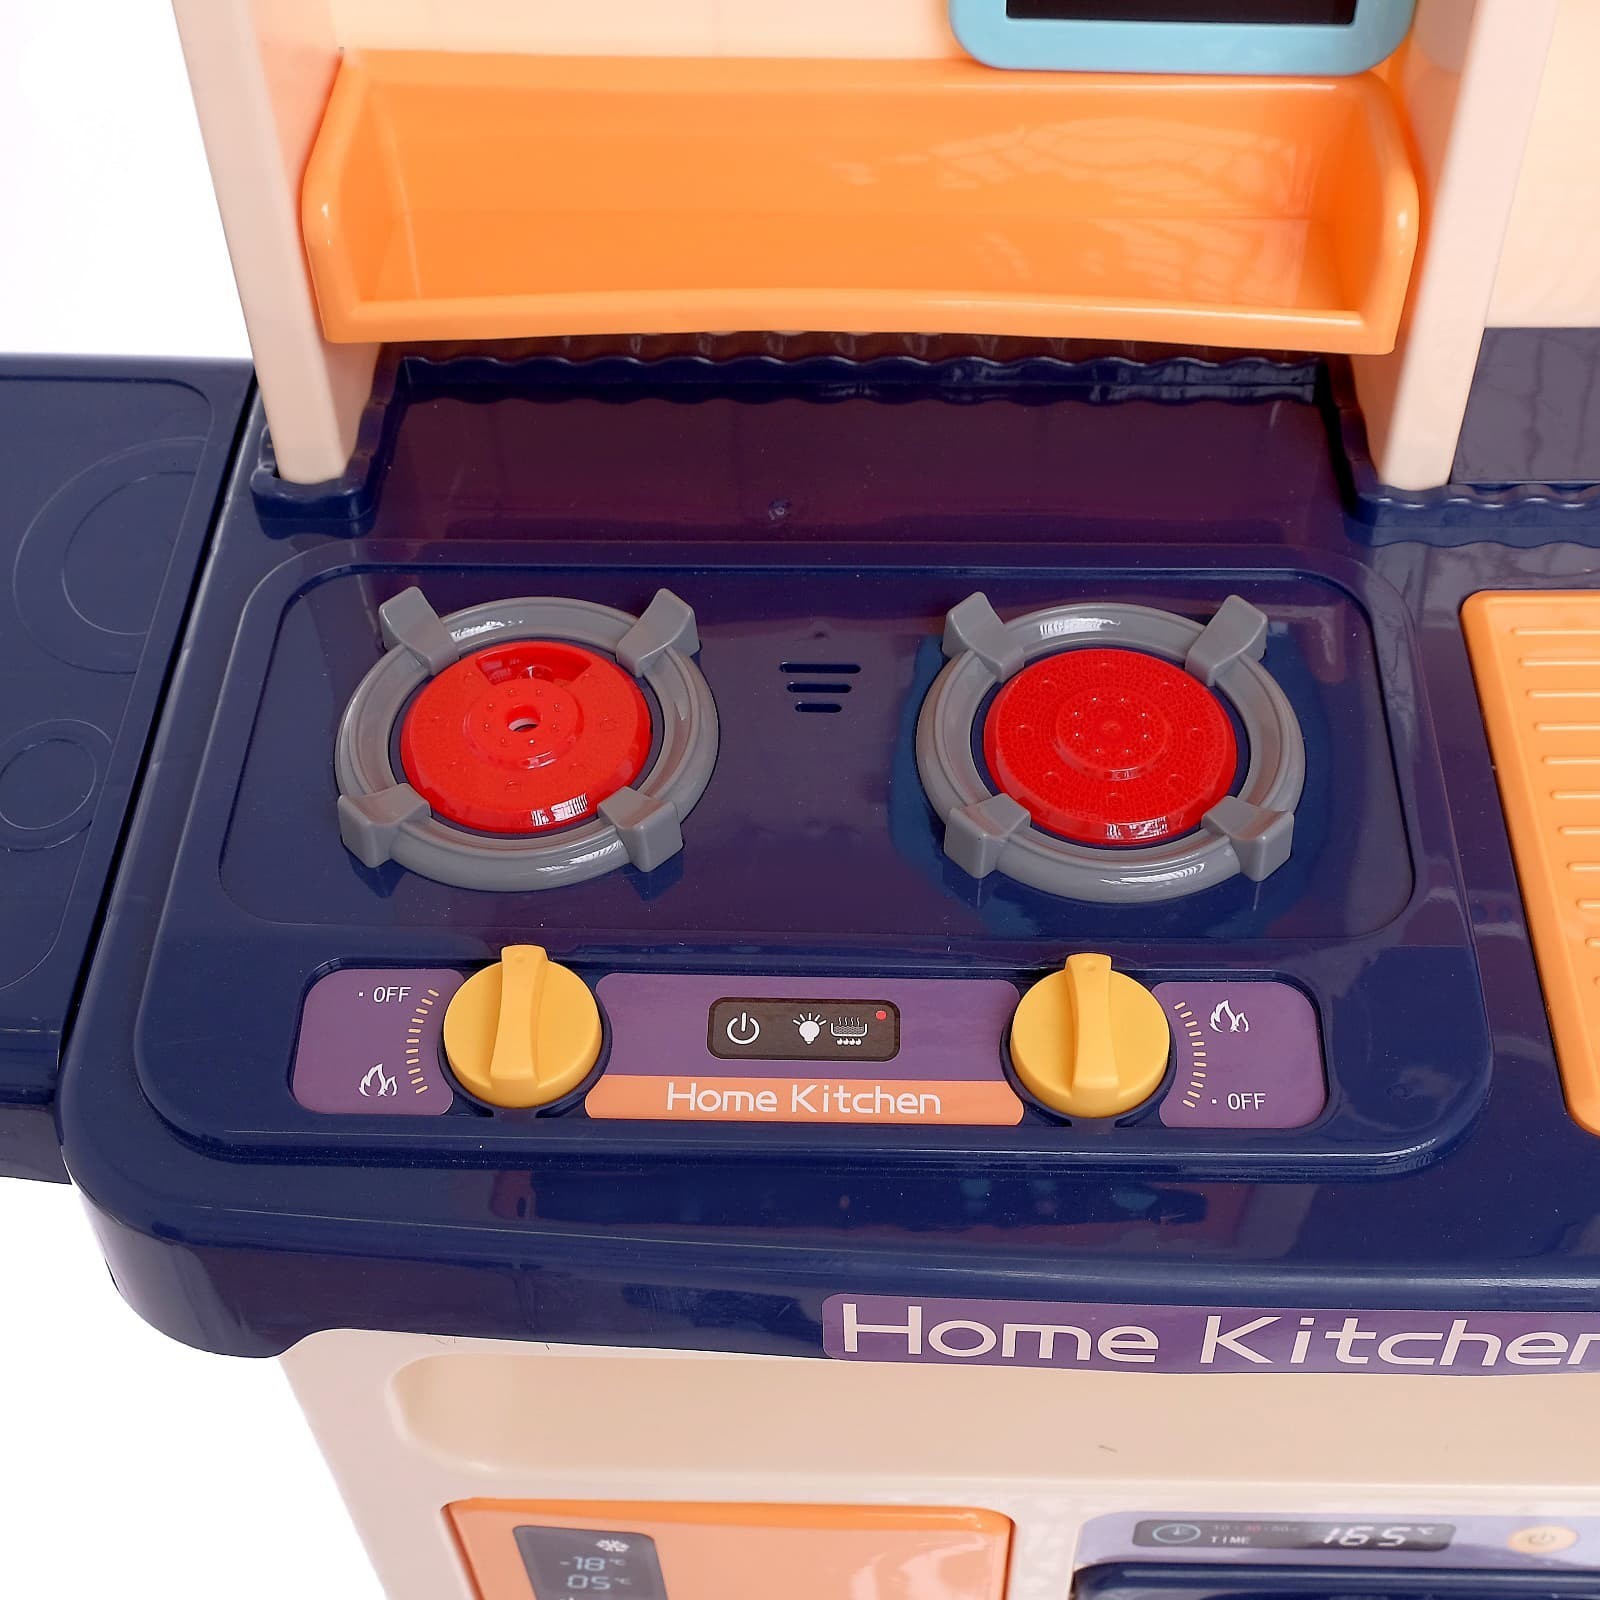 Детская игровая интерактивная кухня Modern Kitchen 889-162, с водой, с паром, 65 аксессуаров, высота 94 см. / Розовая